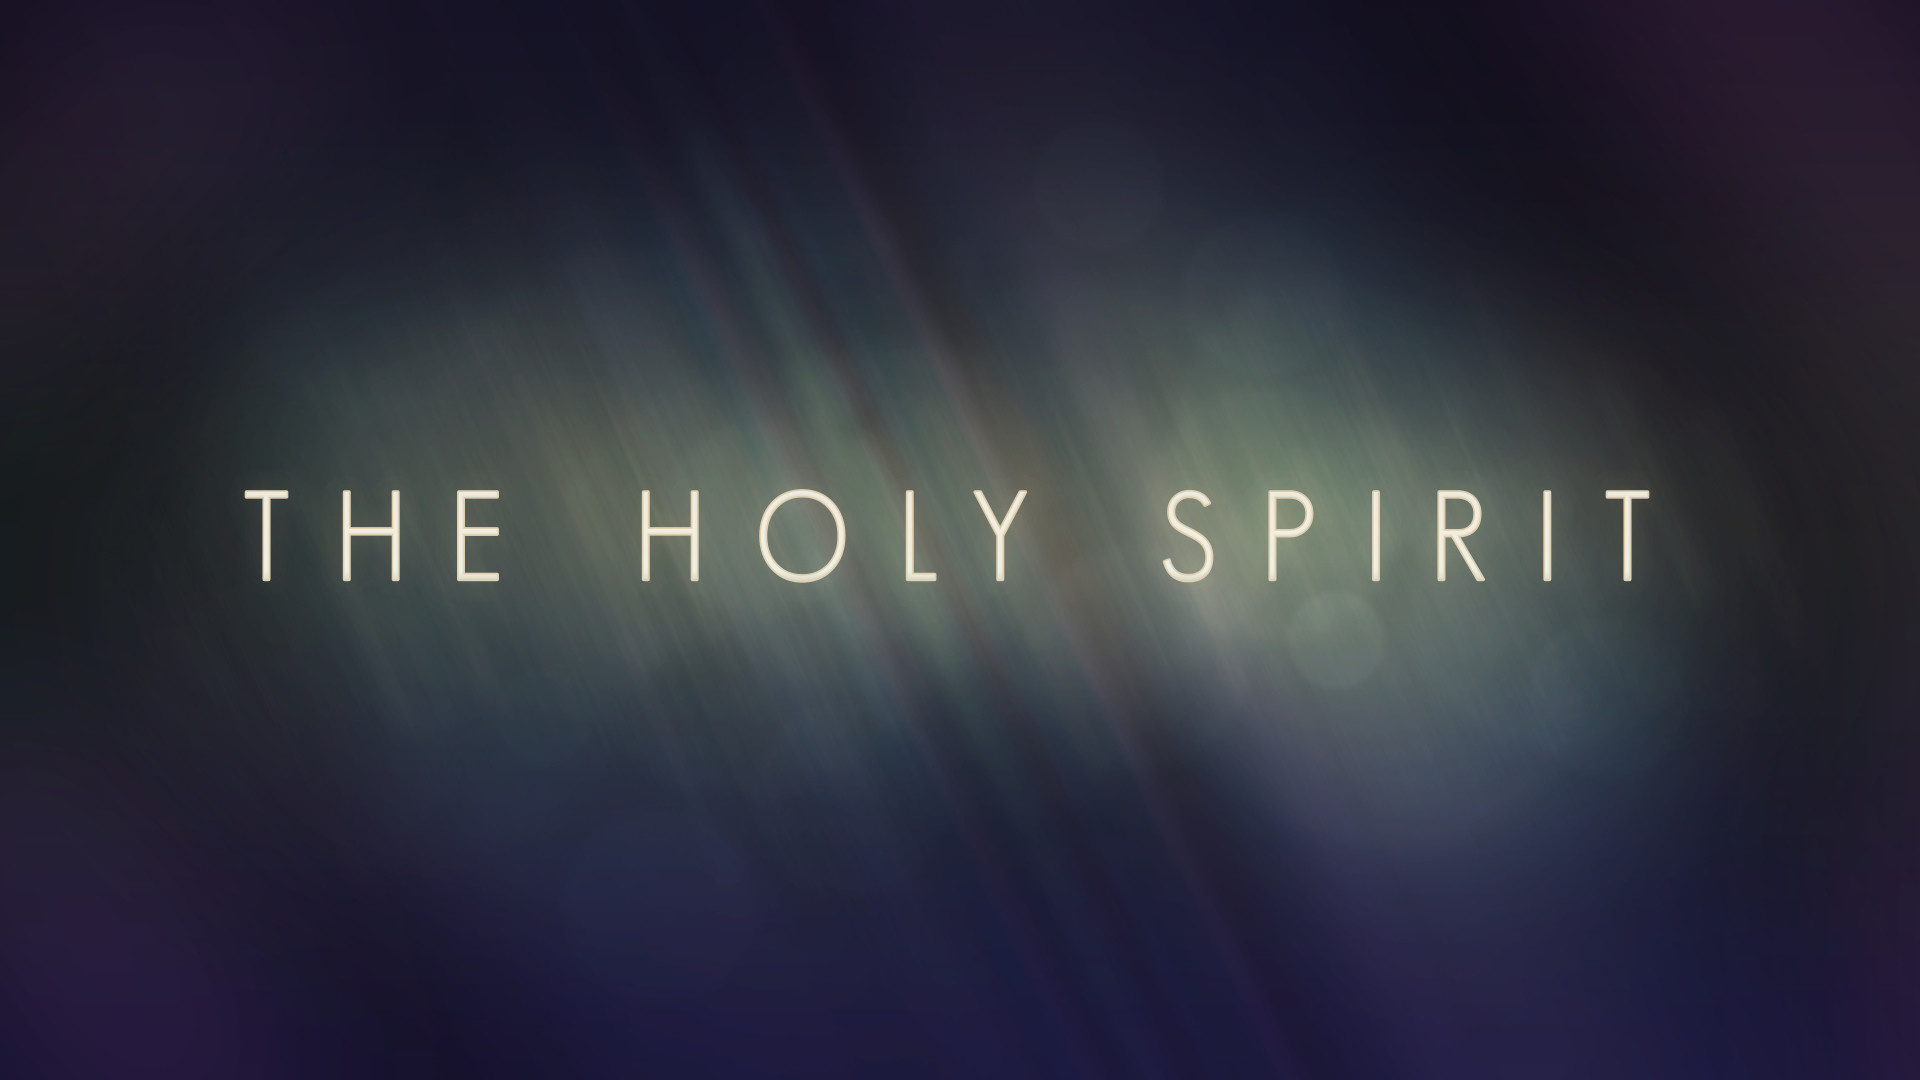 Holy Spirit Images - Free Download on Freepik